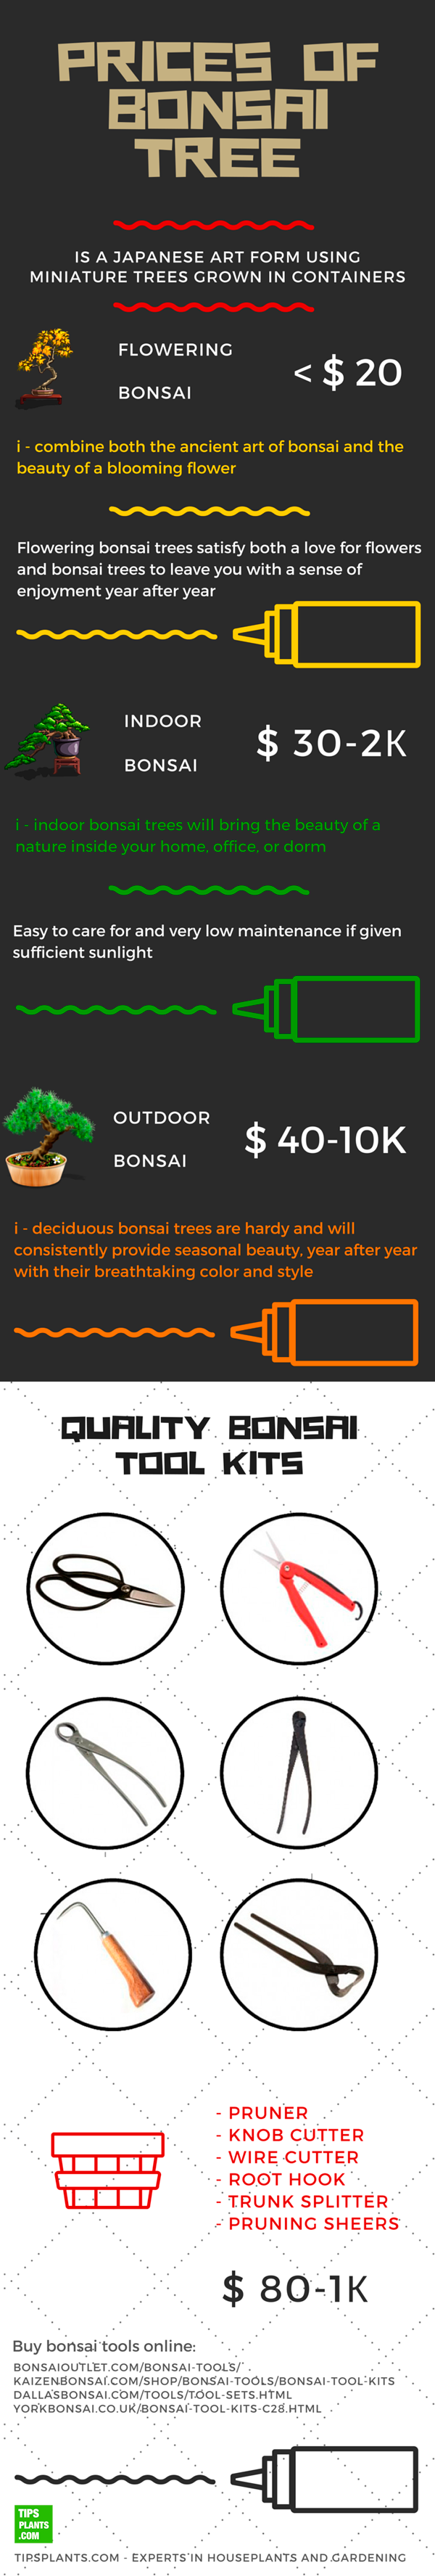 Prices Of Bonsai Tree